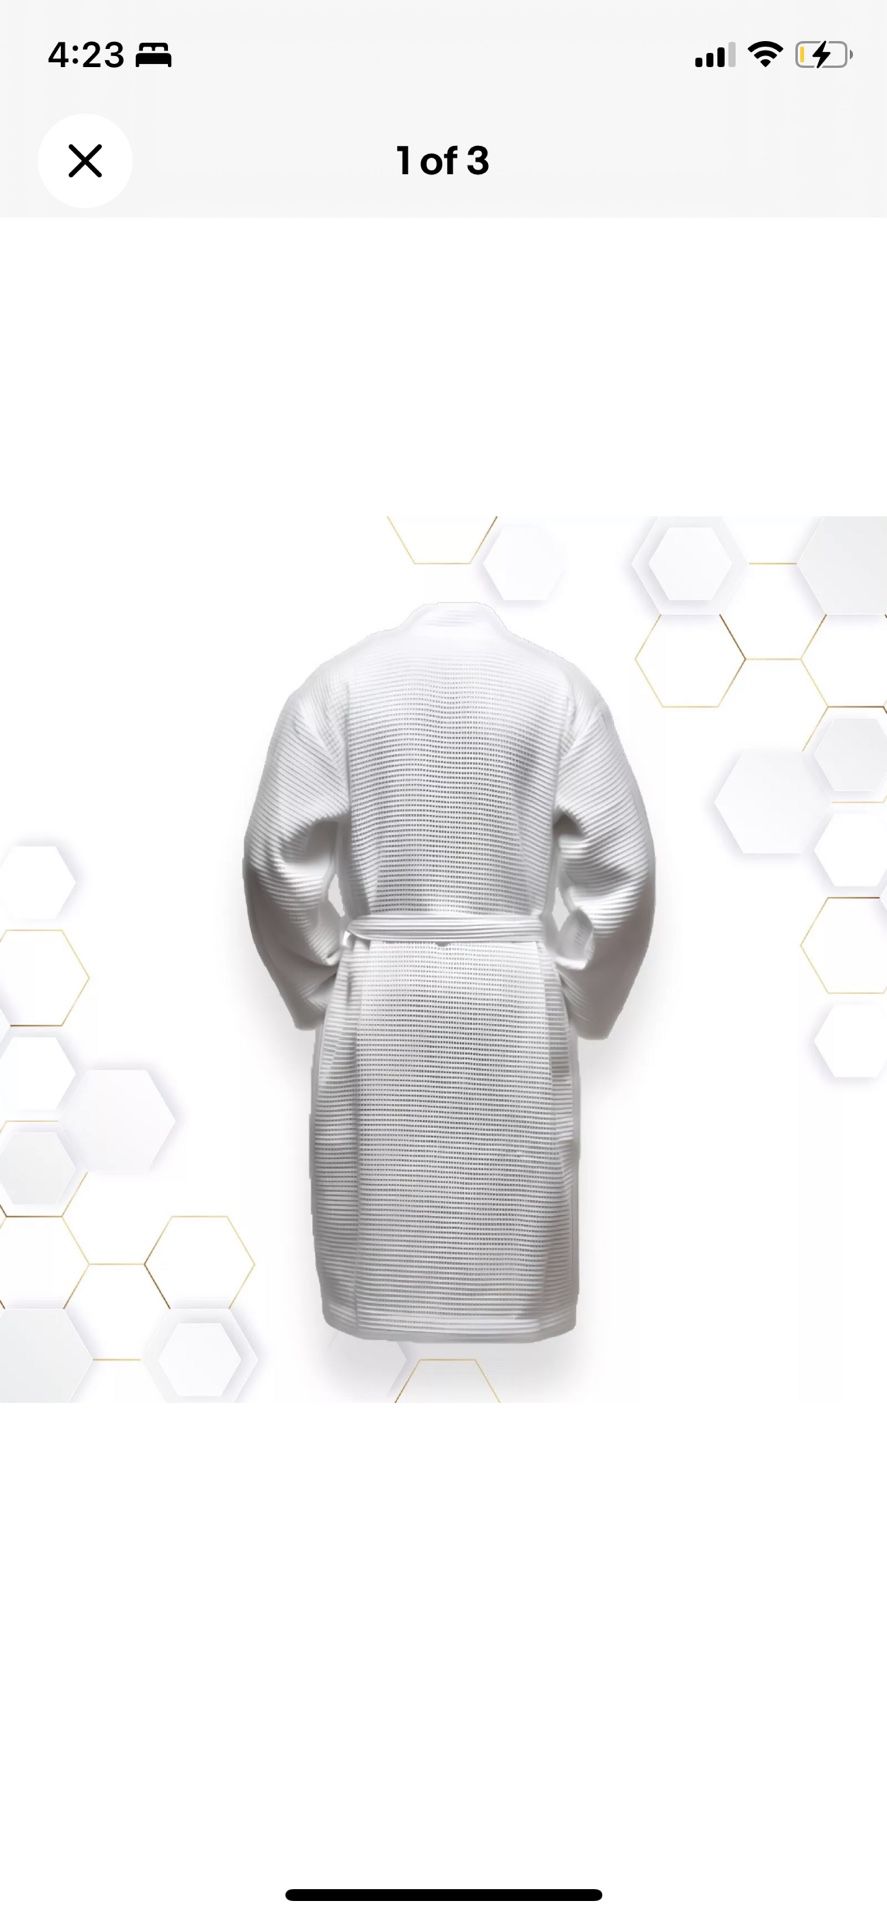 Hotel Edition  Premium Comfy Fit Bath Robe Unisex Kimono lot of 6